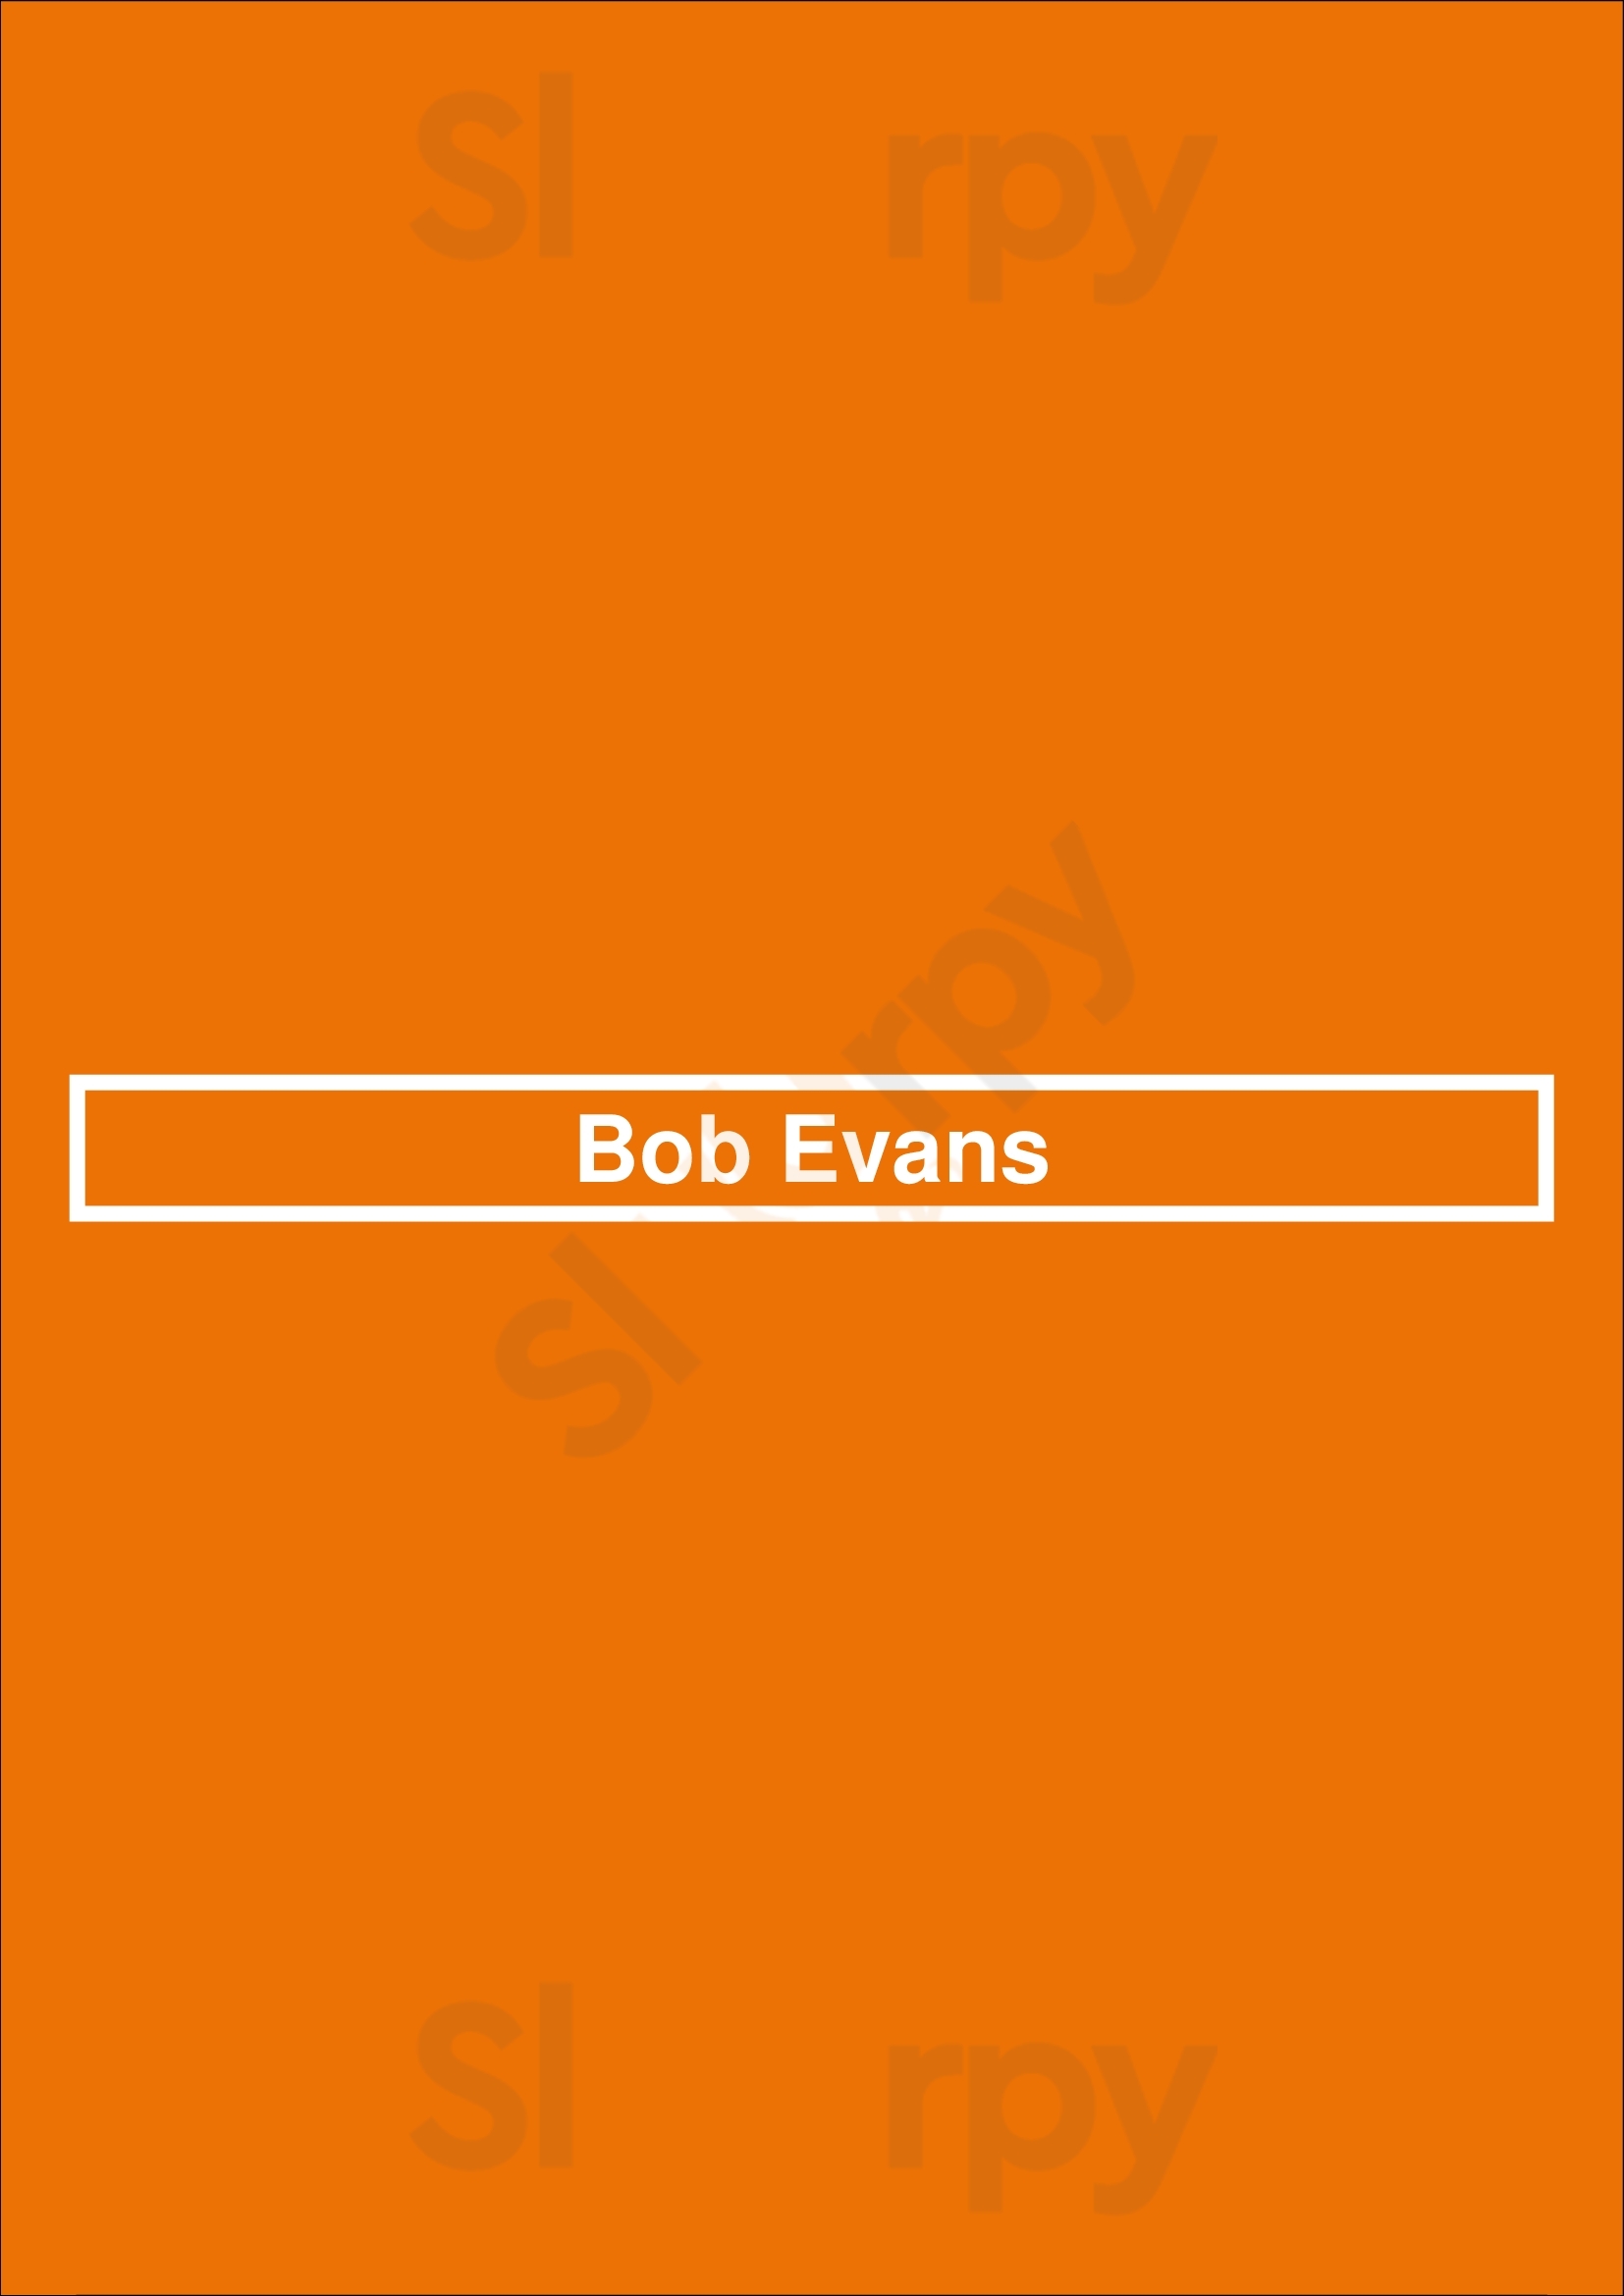 Bob Evans Greenwood Menu - 1